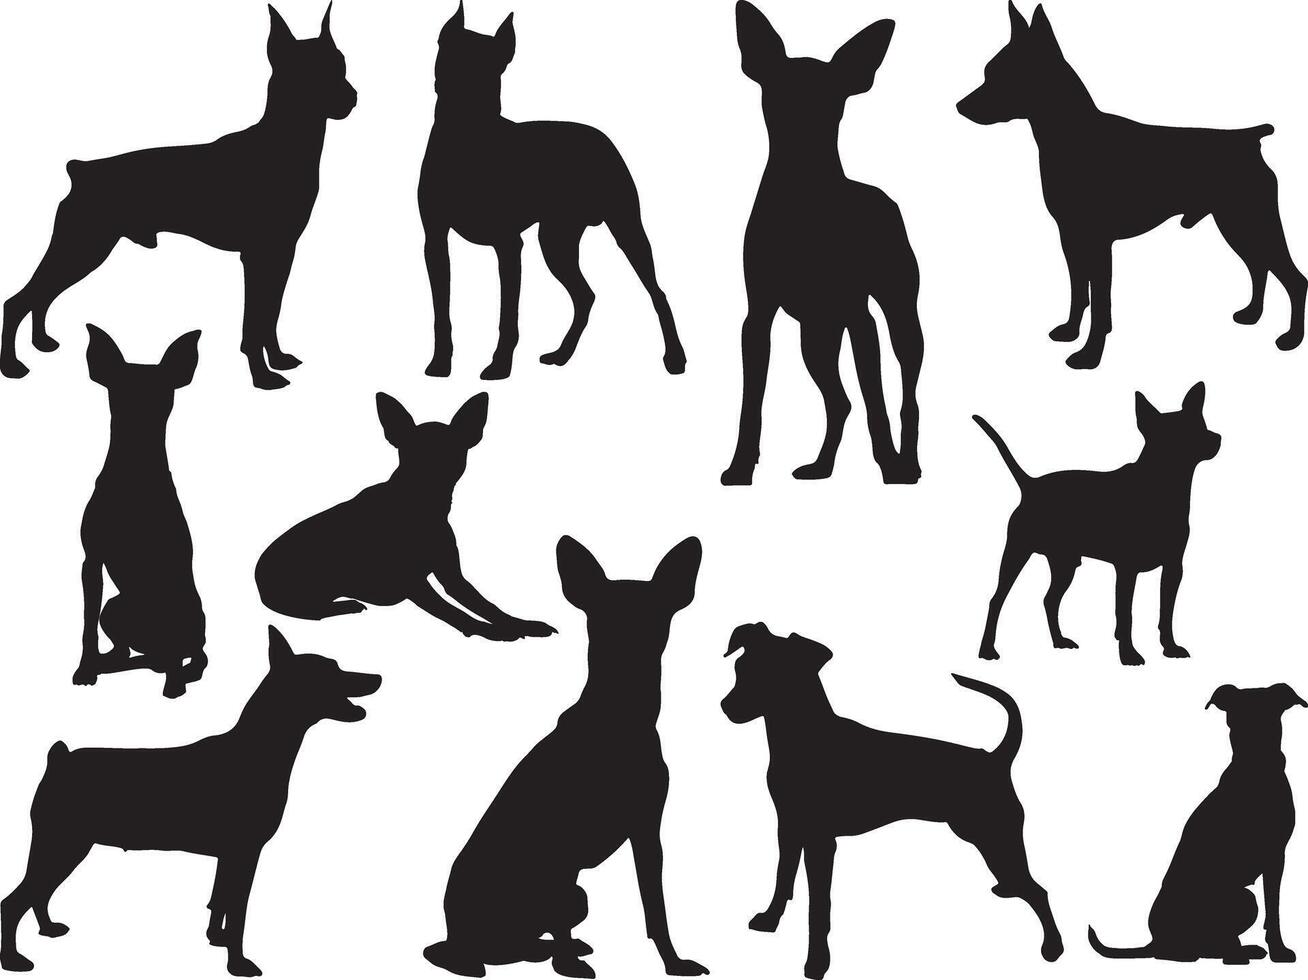 Miniatur Pinscher Hunde Silhouette auf Weiß Hintergrund vektor